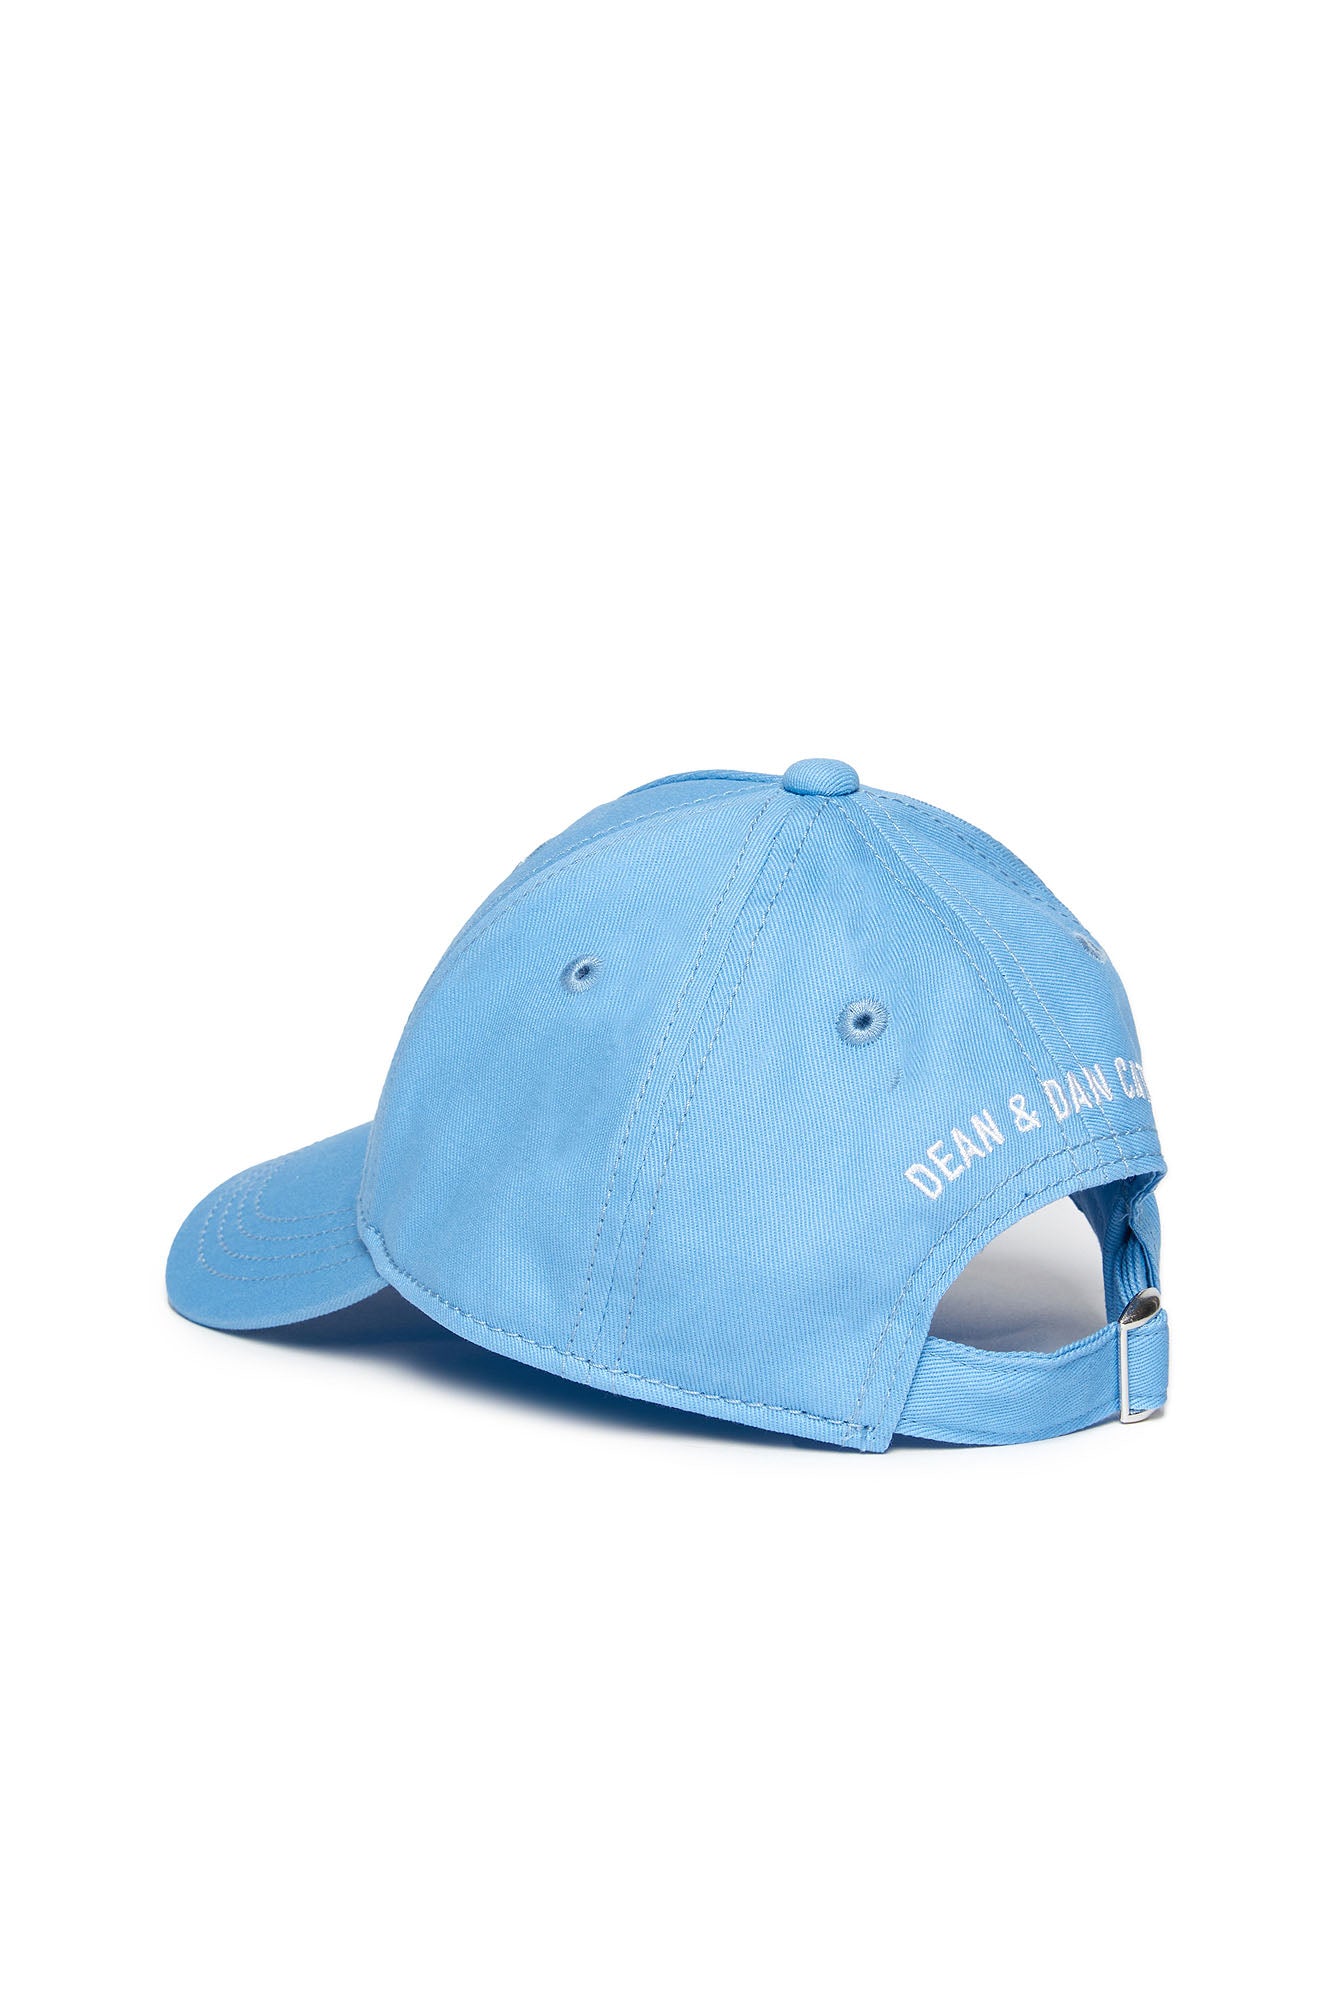 DSQUARED2-Cappello Unisex Bambino Patch Logo-Azzurro